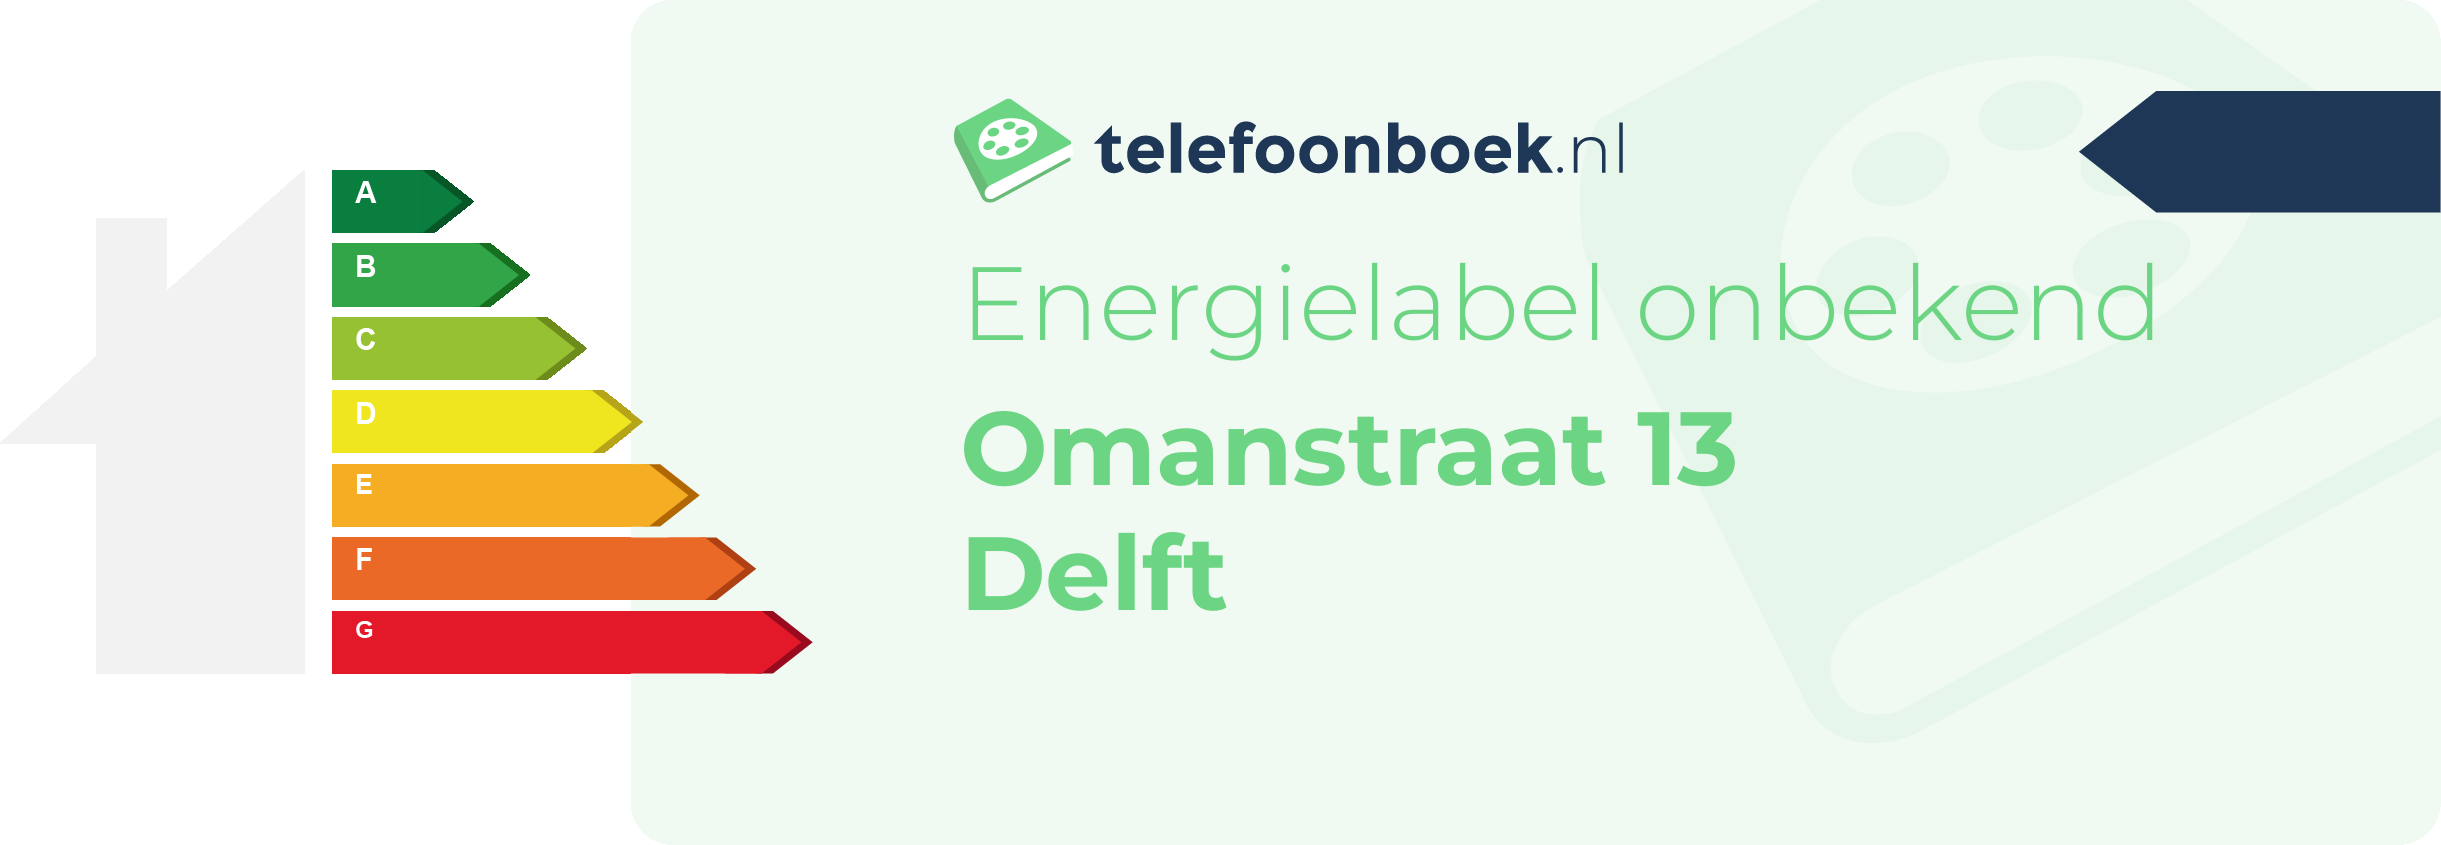 Energielabel Omanstraat 13 Delft